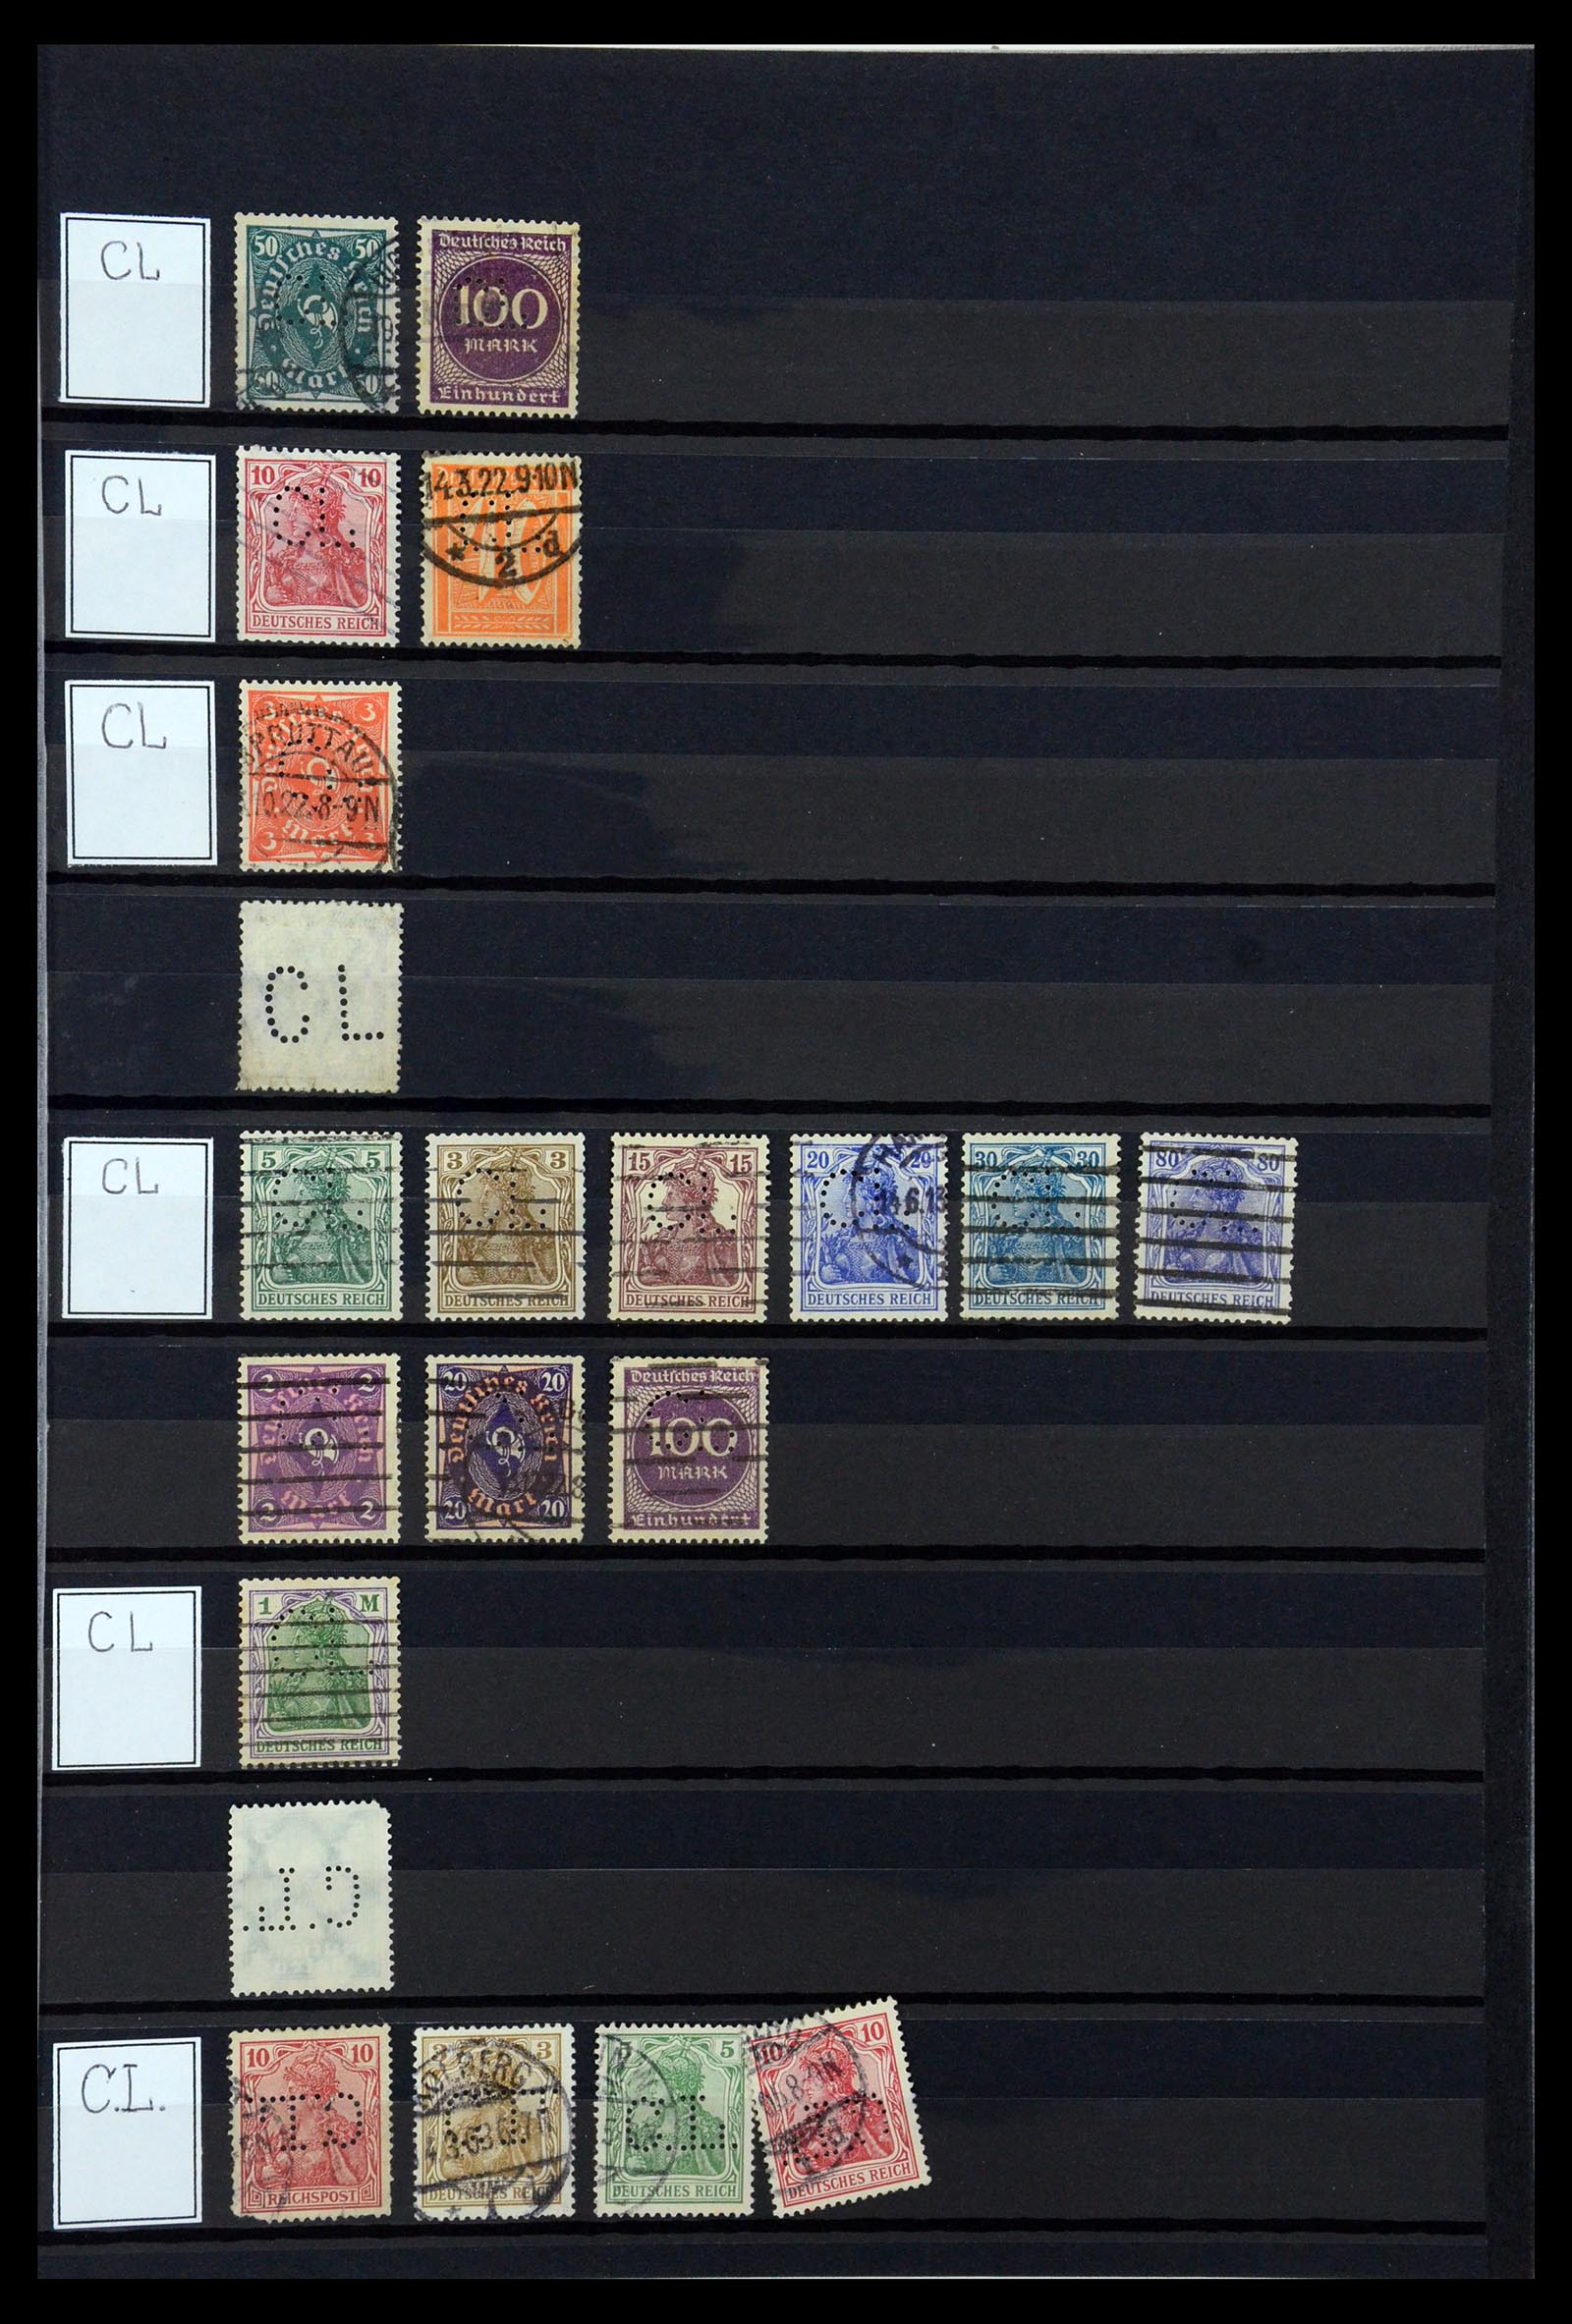 36405 075 - Stamp collection 36405 German Reich perfins 1880-1945.